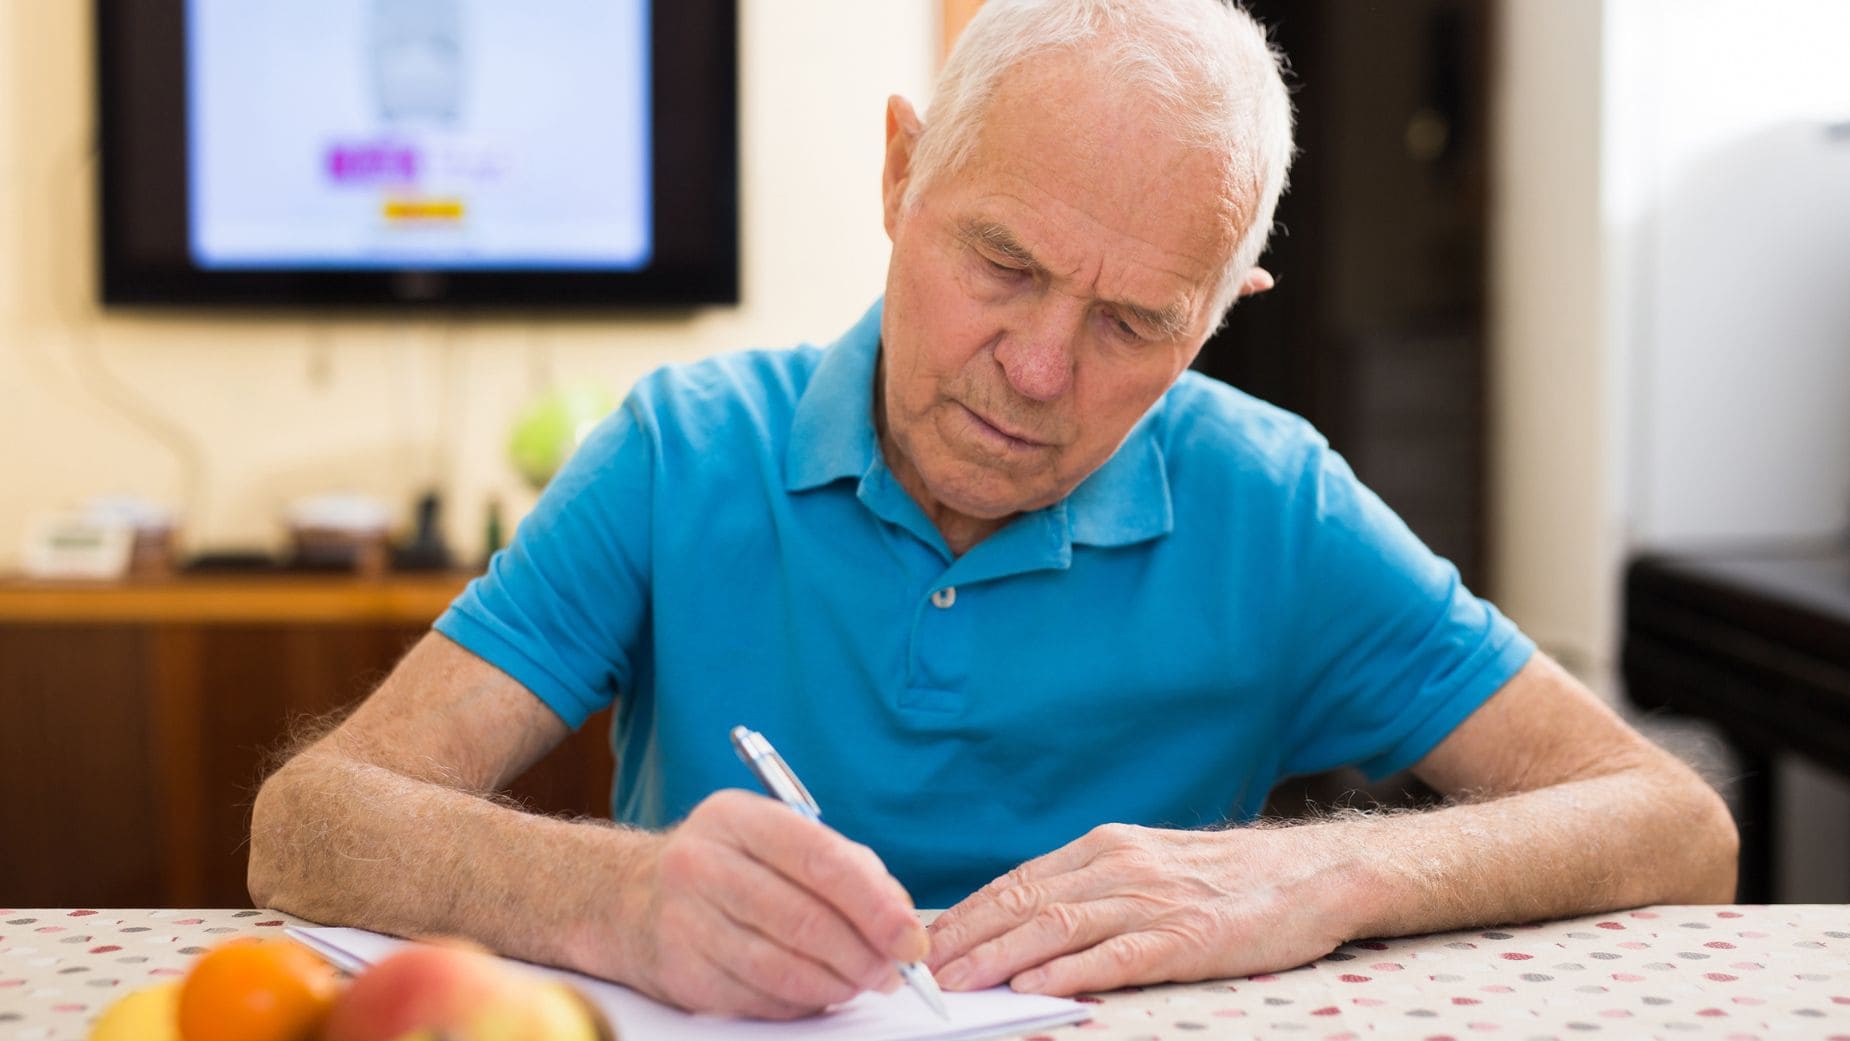 Cobrar menos en la pensión no contributiva de jubilación